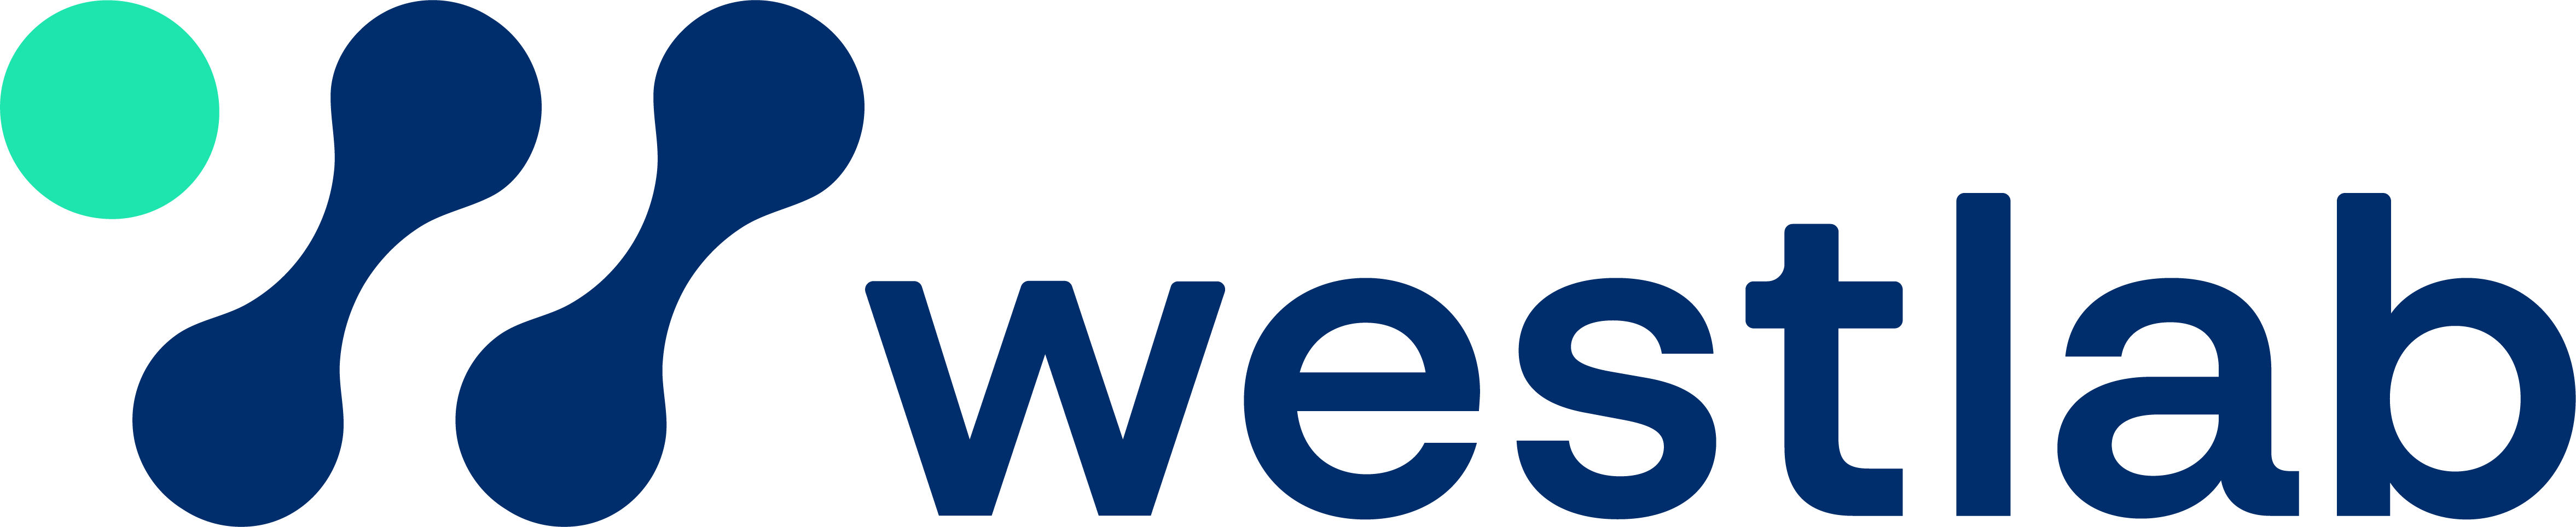 Westlab logo